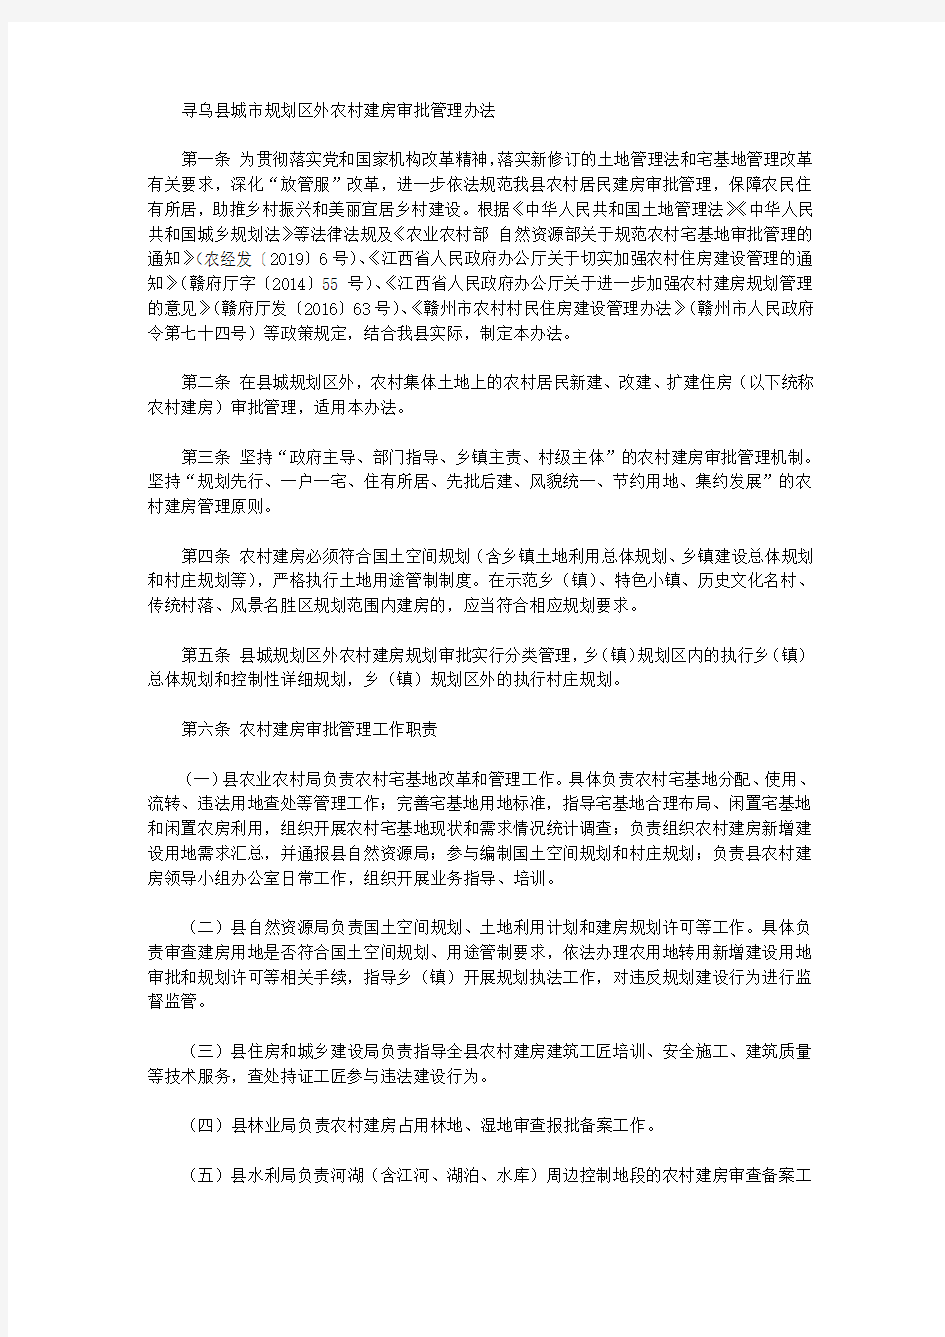 寻乌县城市规划区外农村建房审批管理办法